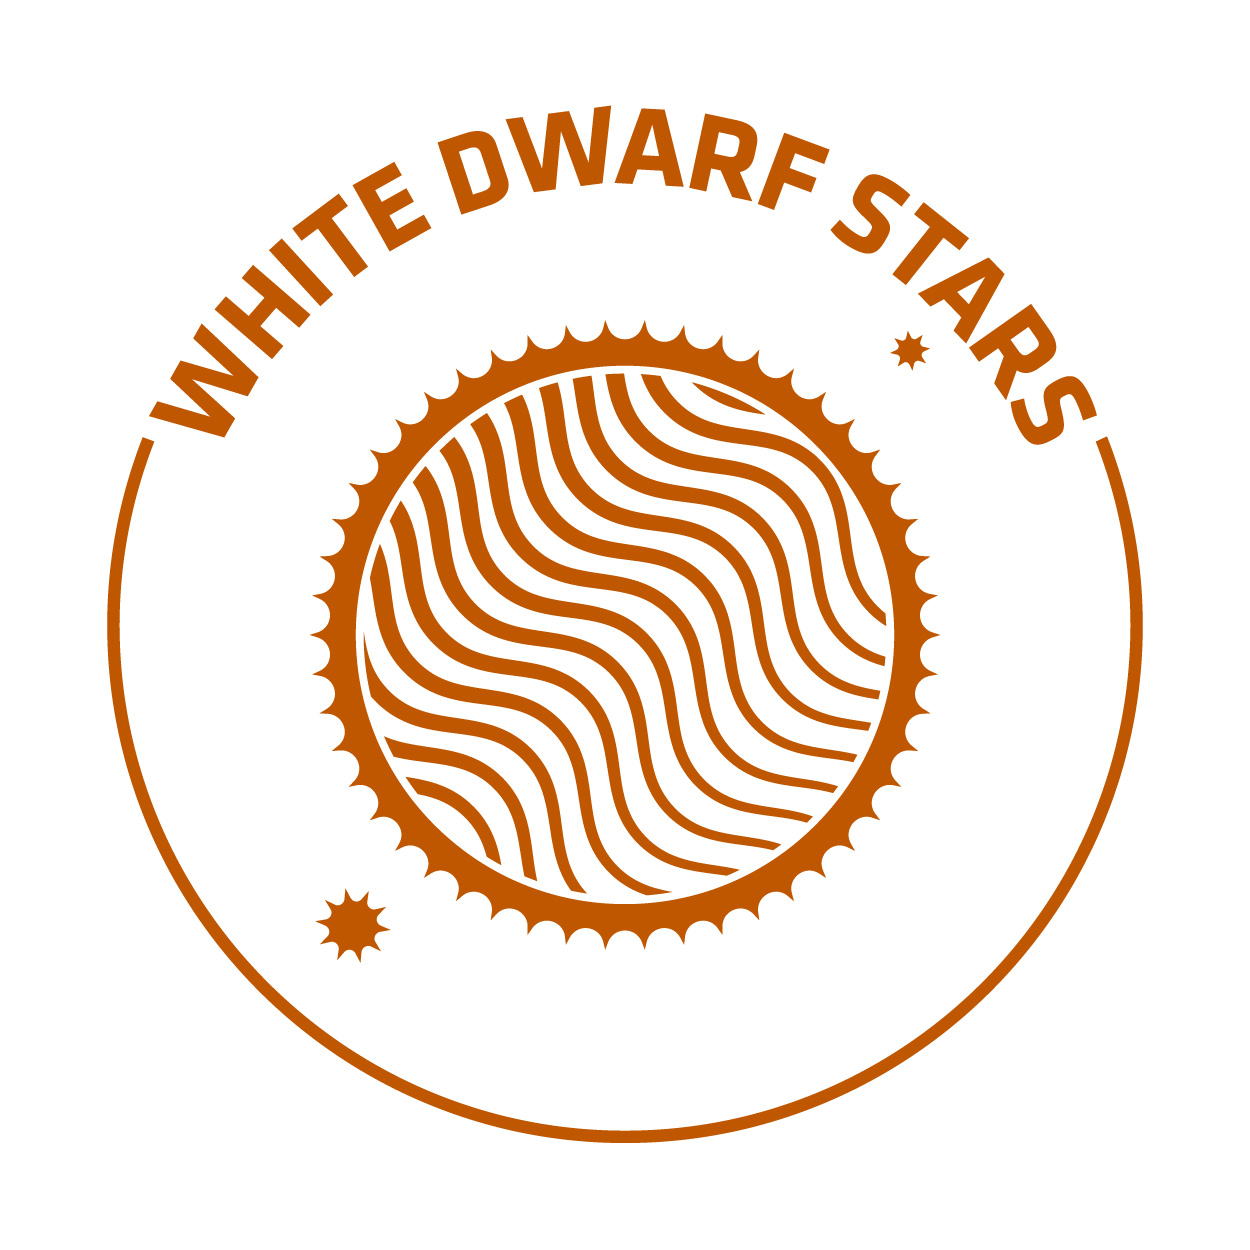 white dwarf stars RGB orange nickname